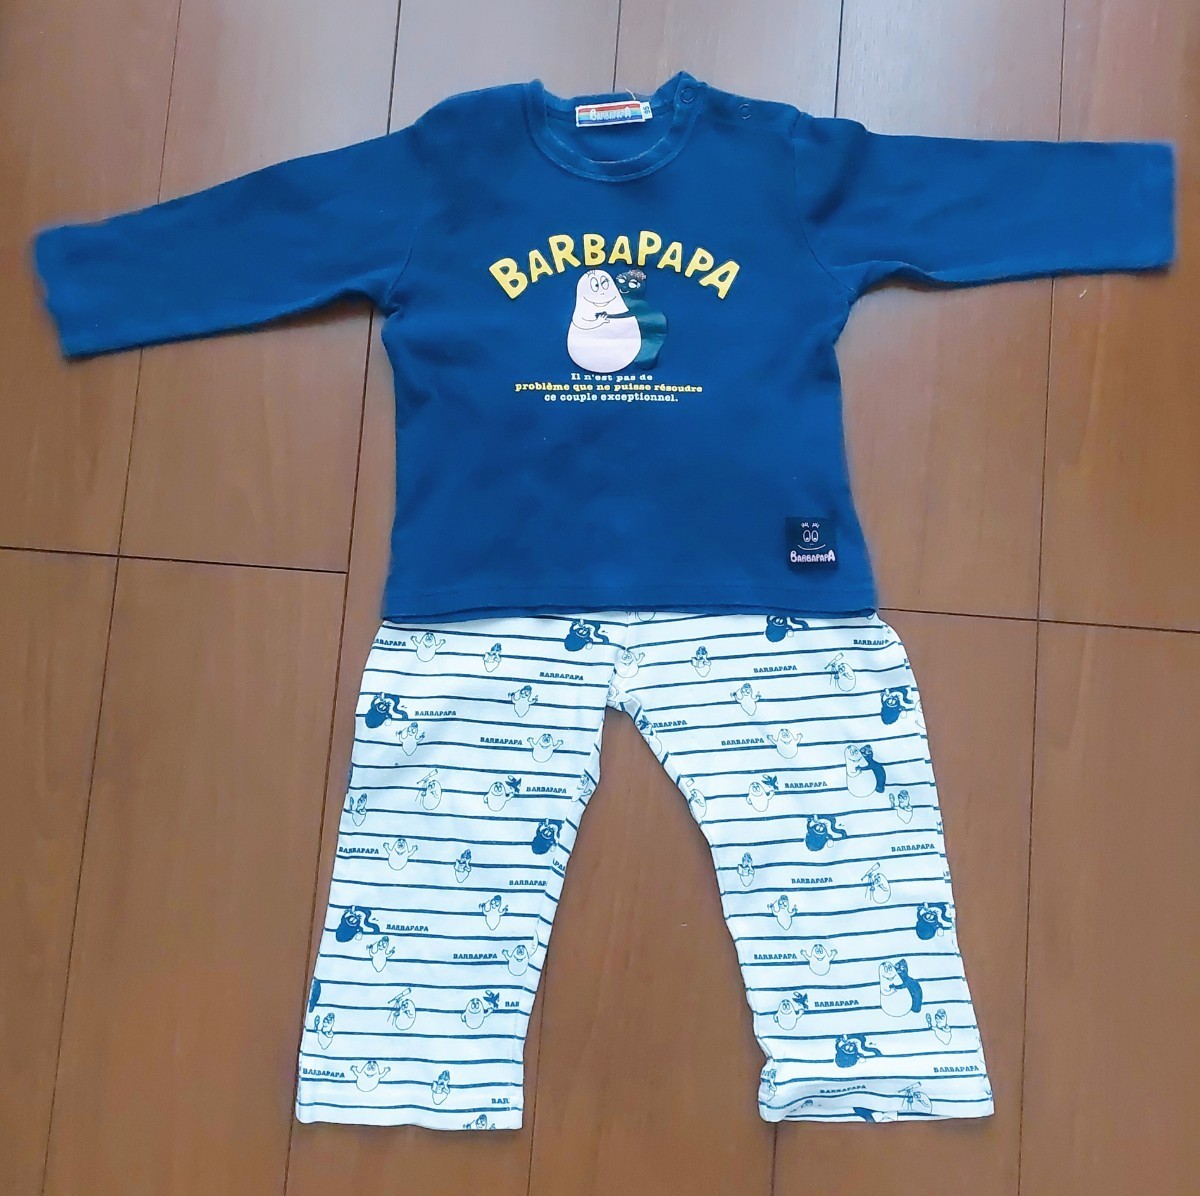  Barbapapa пижама одежда для дома -95 верх и низ в комплекте 